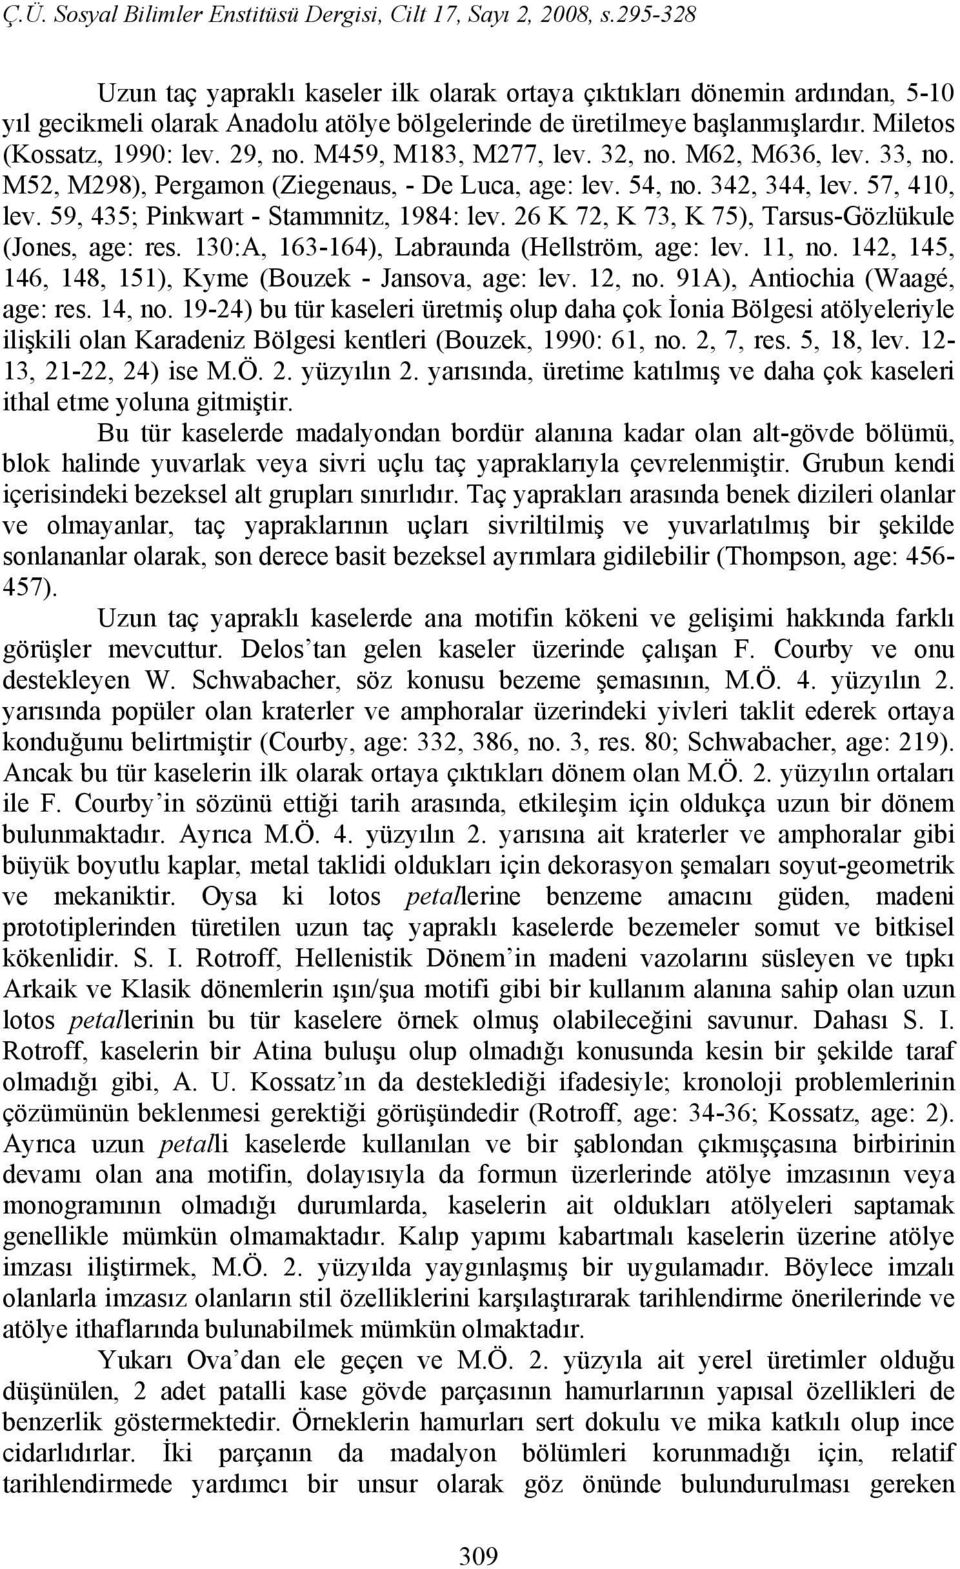 26 K 72, K 73, K 75), Tarsus-Gözlükule (Jones, age: res. 130:A, 163-164), Labraunda (Hellström, age: lev. 11, no. 142, 145, 146, 148, 151), Kyme (Bouzek - Jansova, age: lev. 12, no.